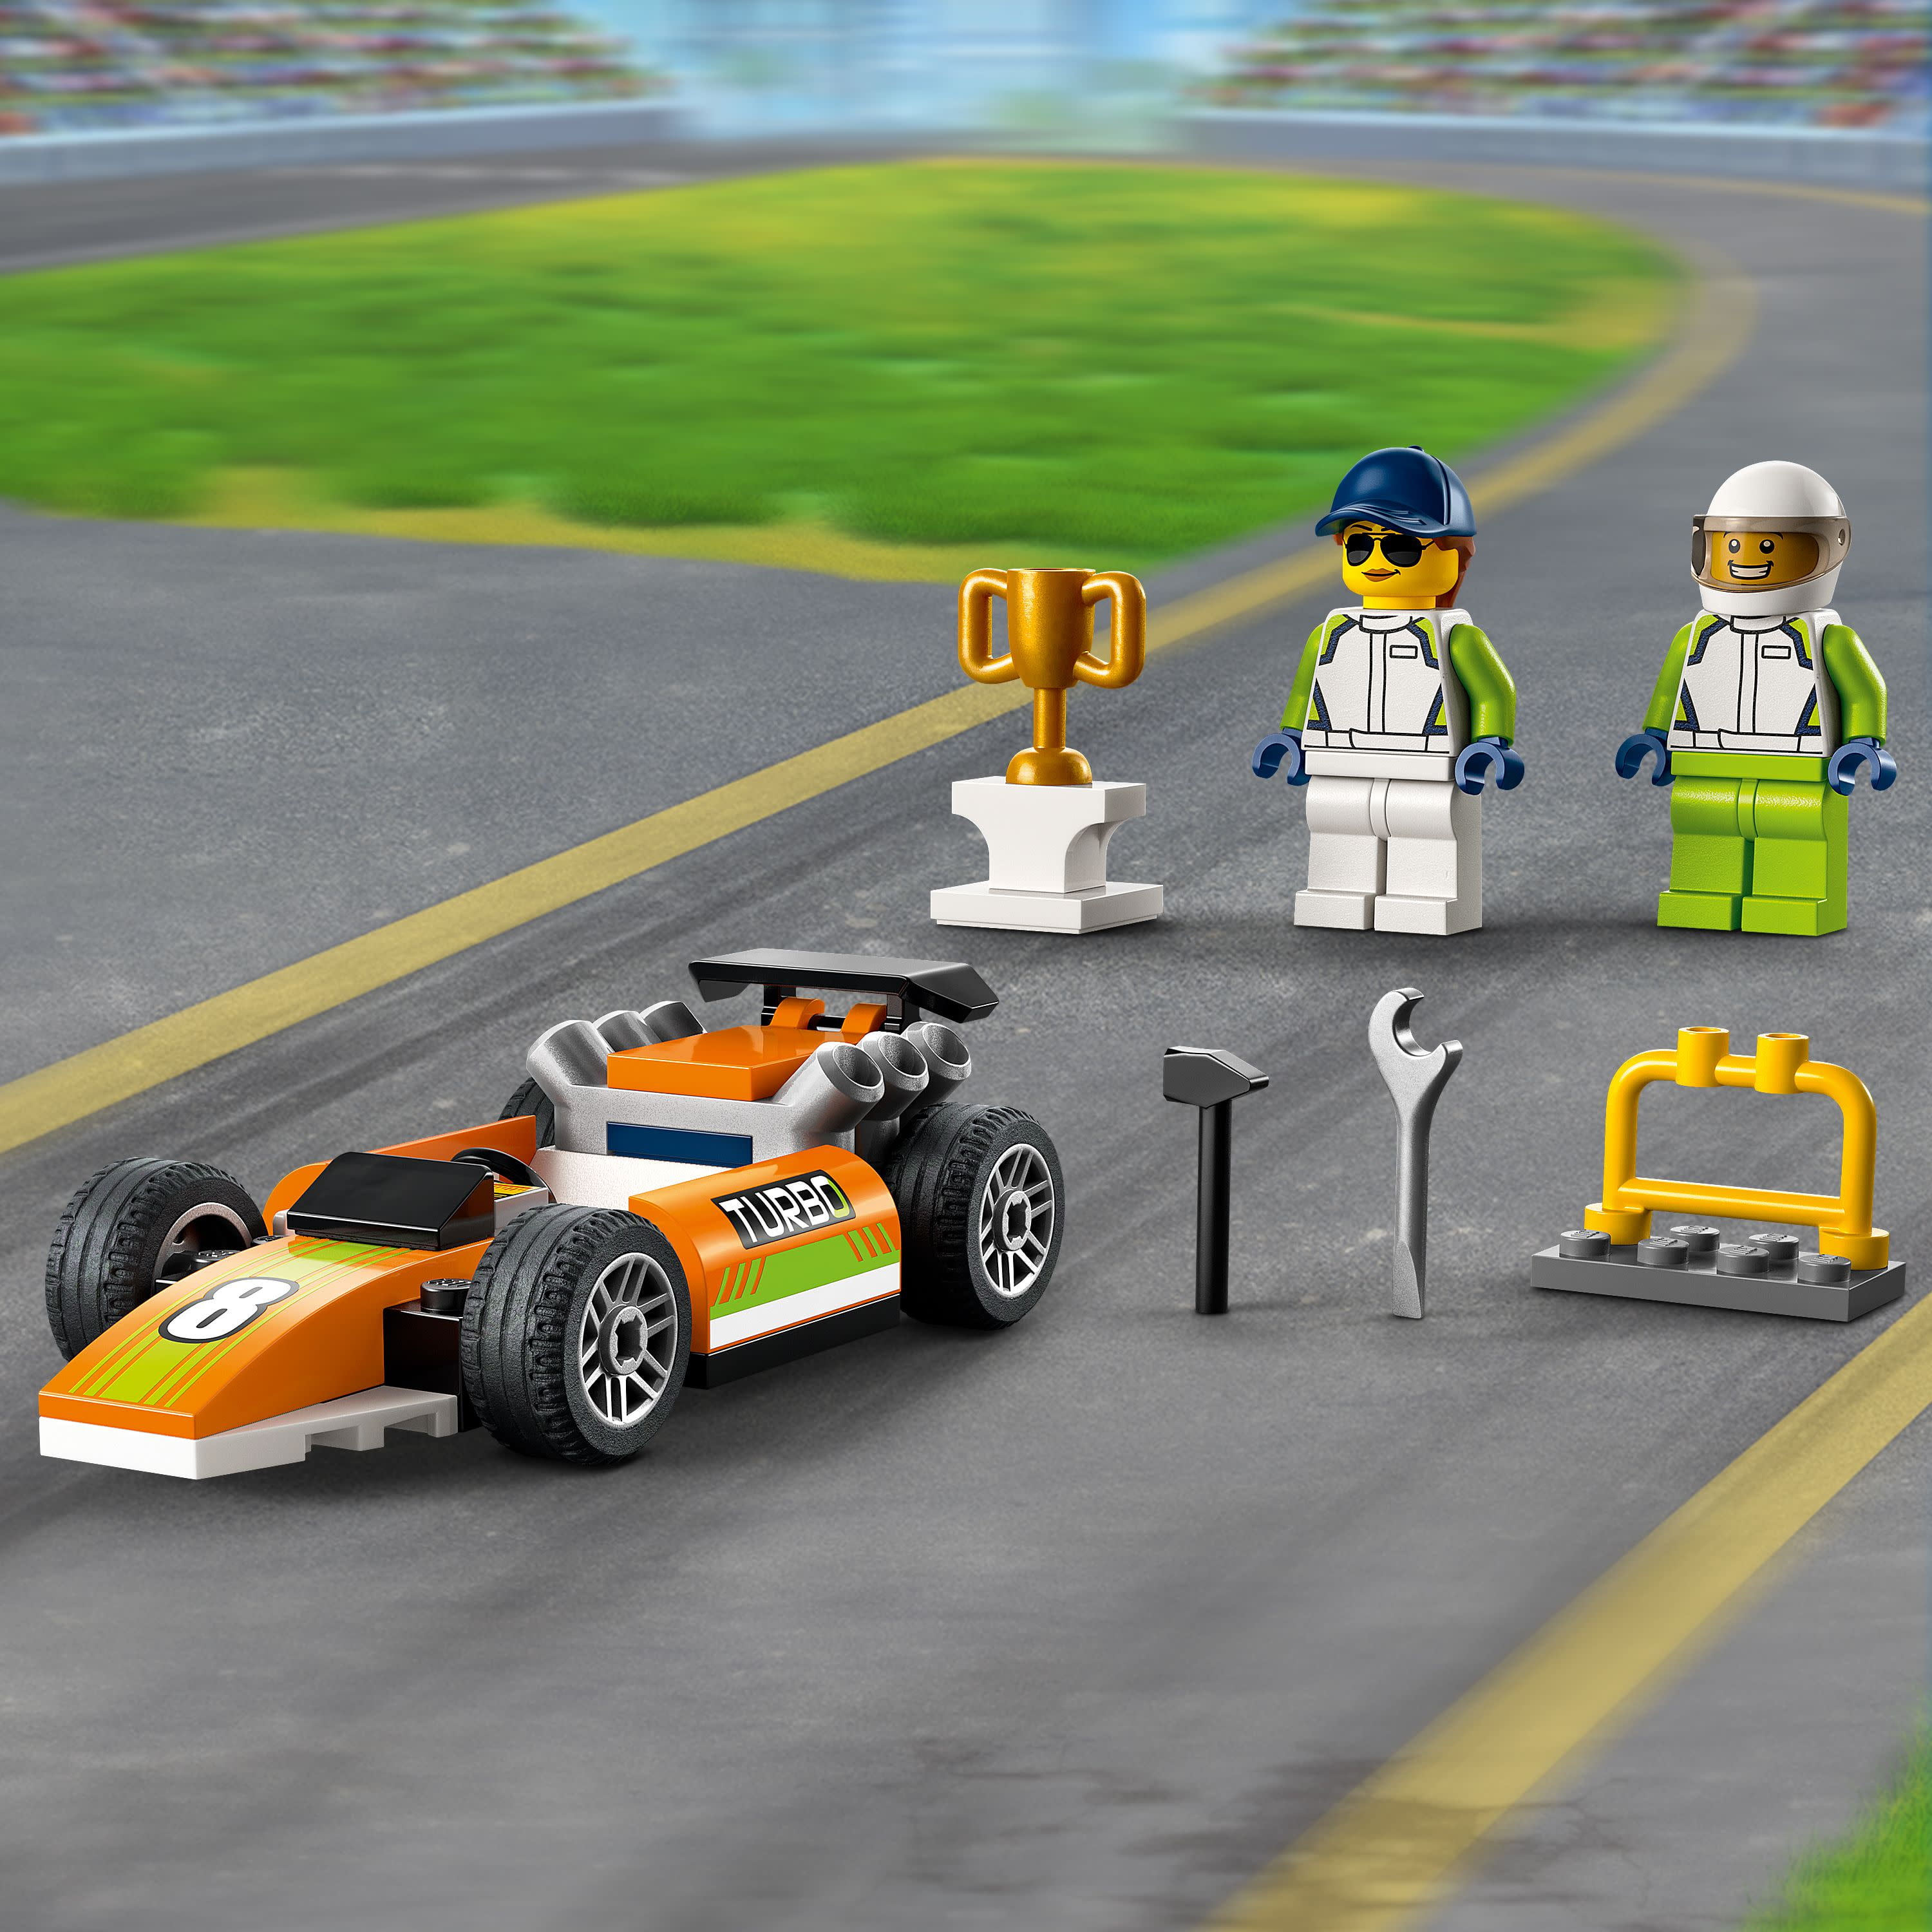 LEGO City Great Vehicles Race Car, 60322 F1 Style Toy para niños  preescolares de 4 años de edad, con minifiguras mecánicas y conductores de  carreras